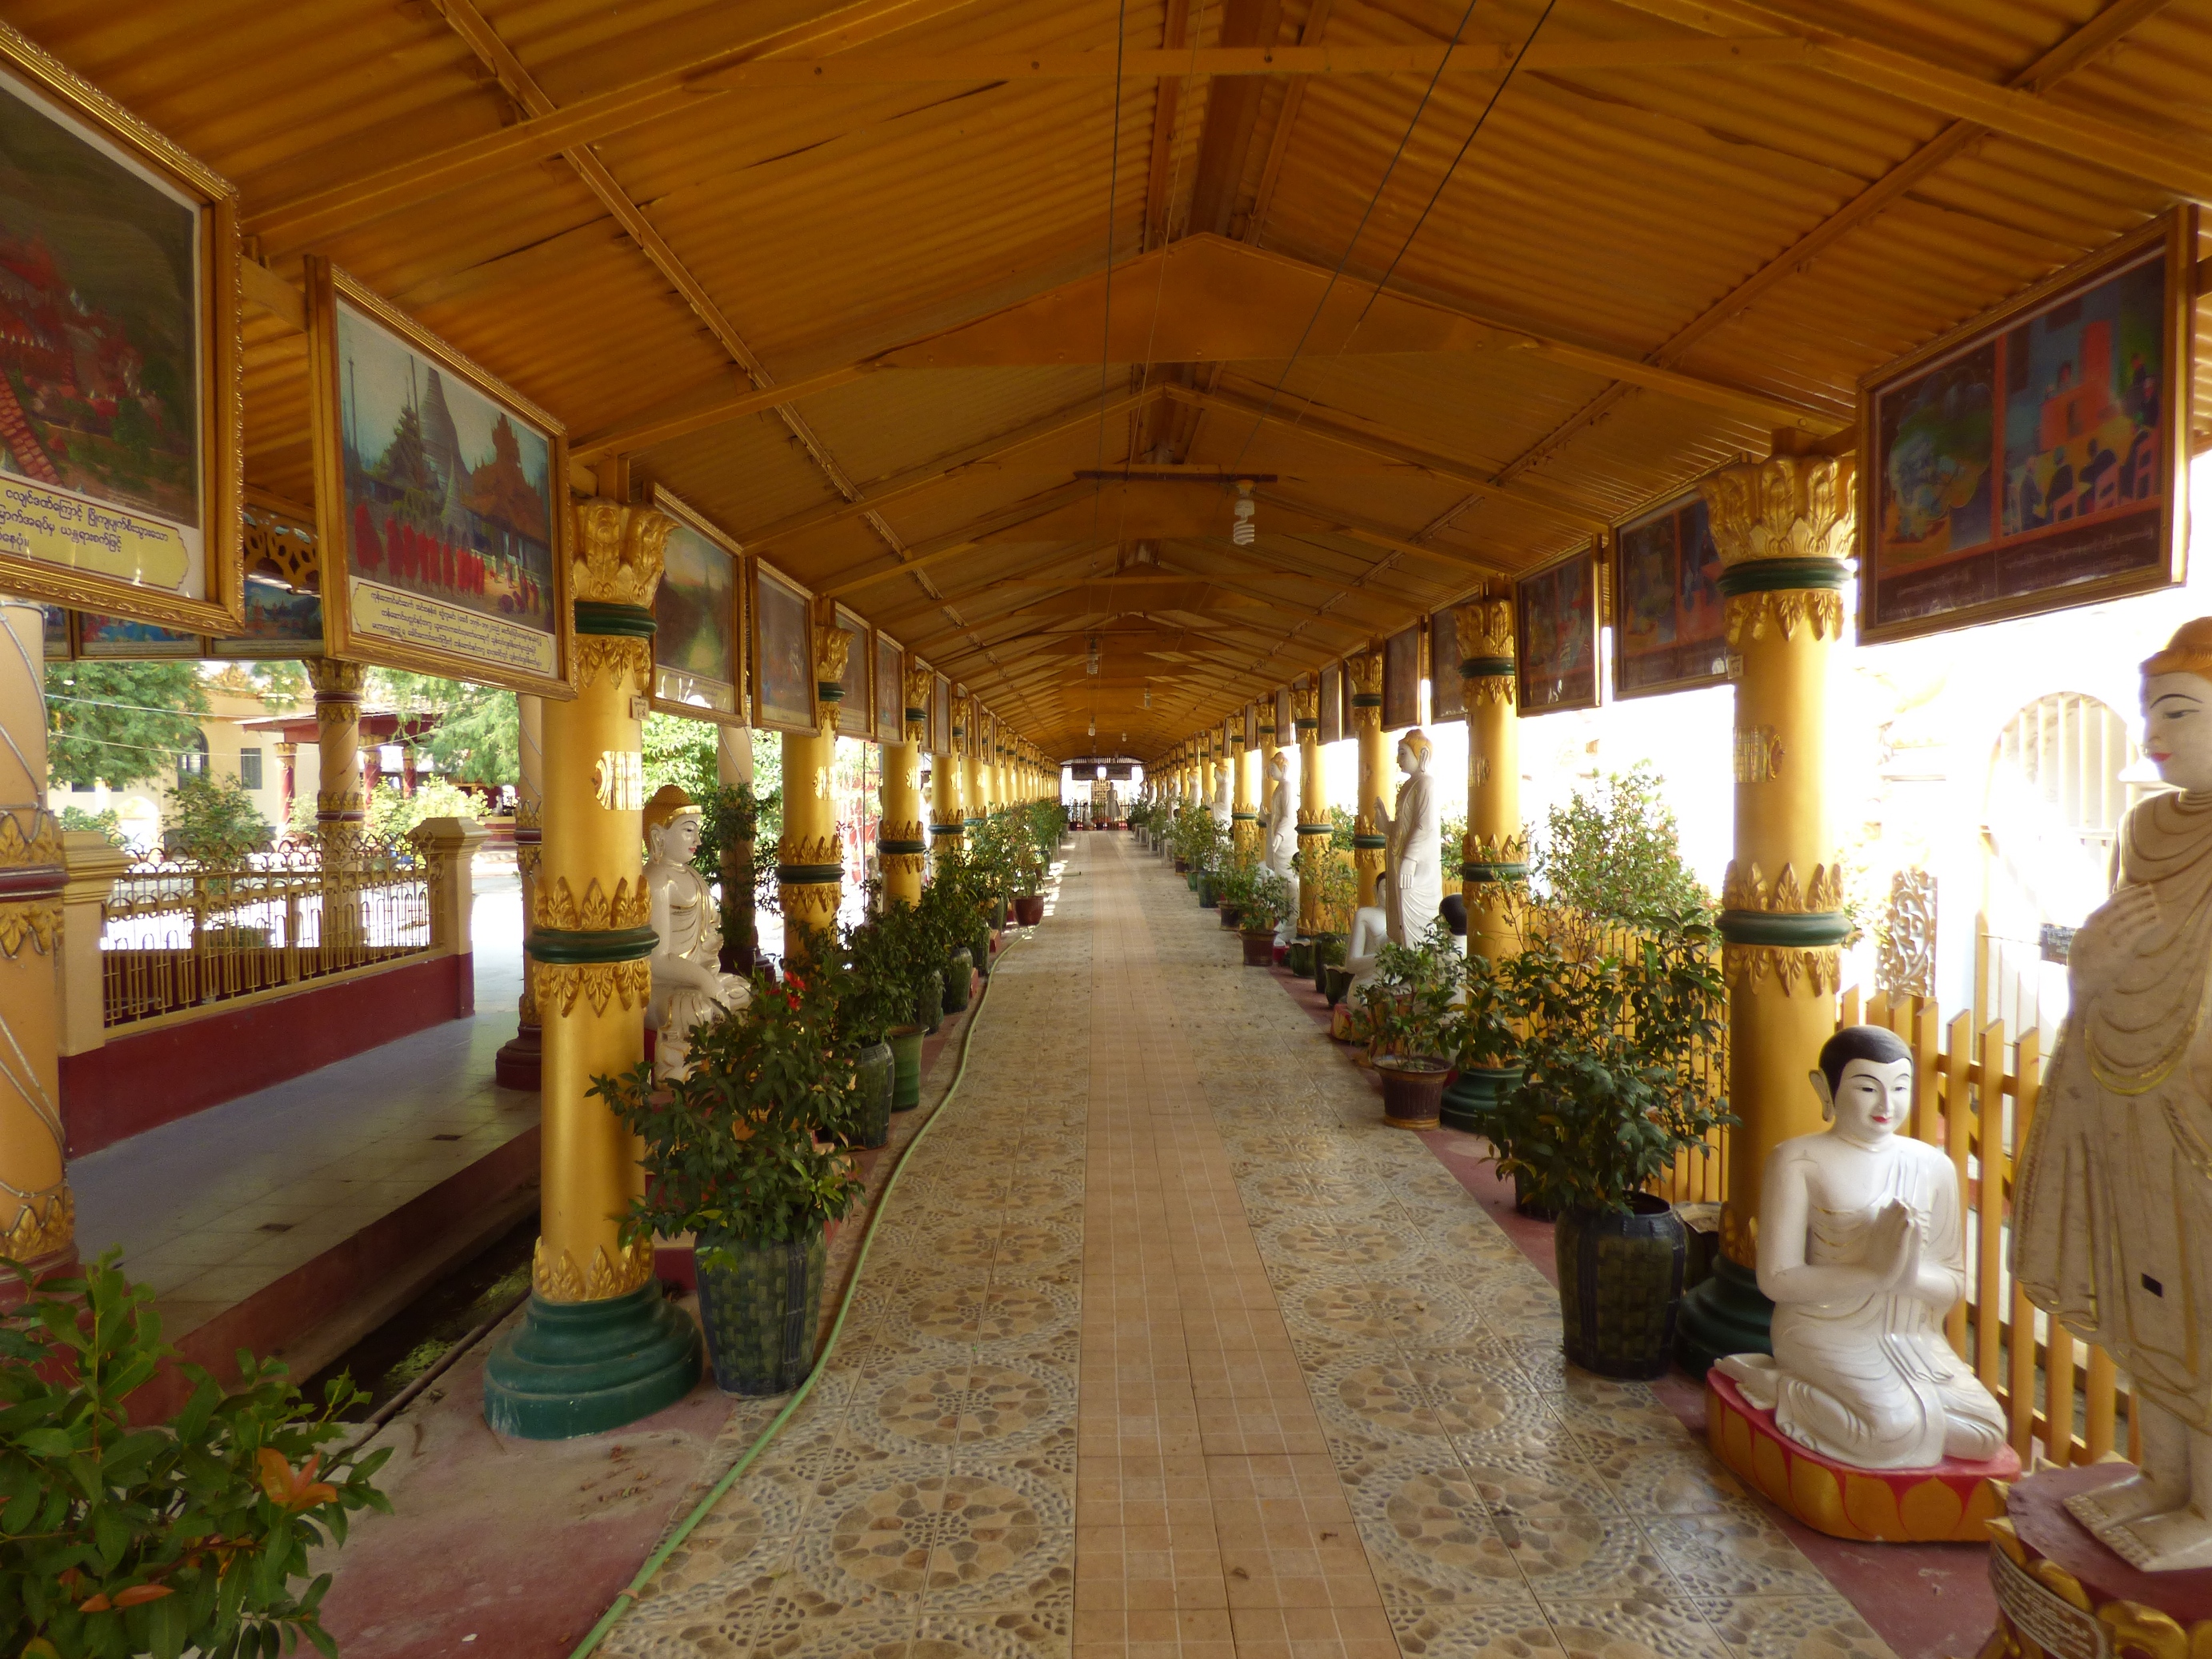 Kellemes a Buddhákkal szegélyezett fedett folyosókon sétálni és elmélkedni.